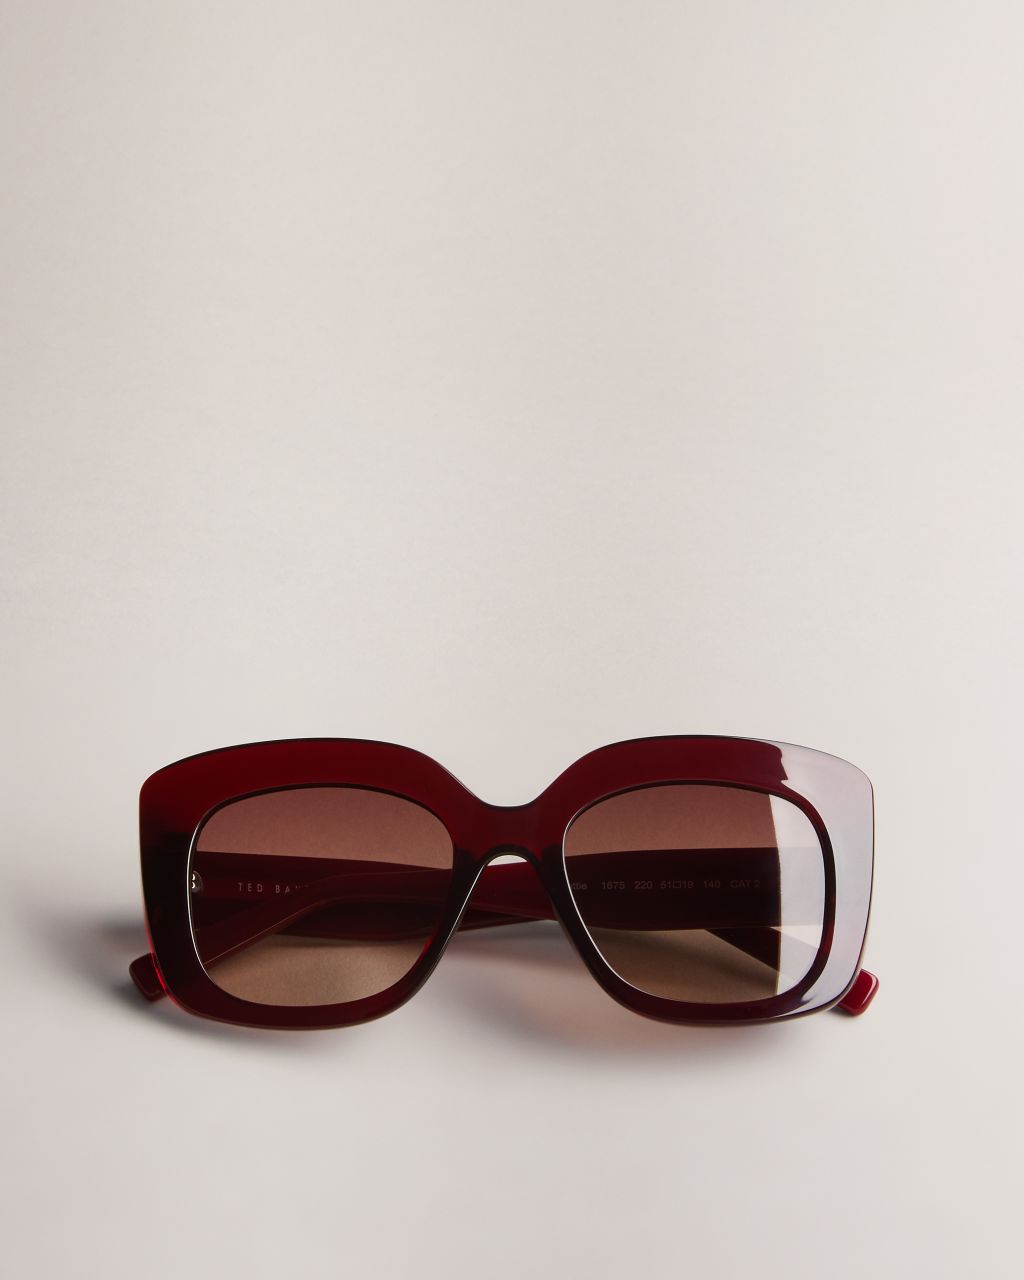 Damen Oversized Sonnenbrille Mit Quadratischem Rahmen In Dunkelrot, Hatties